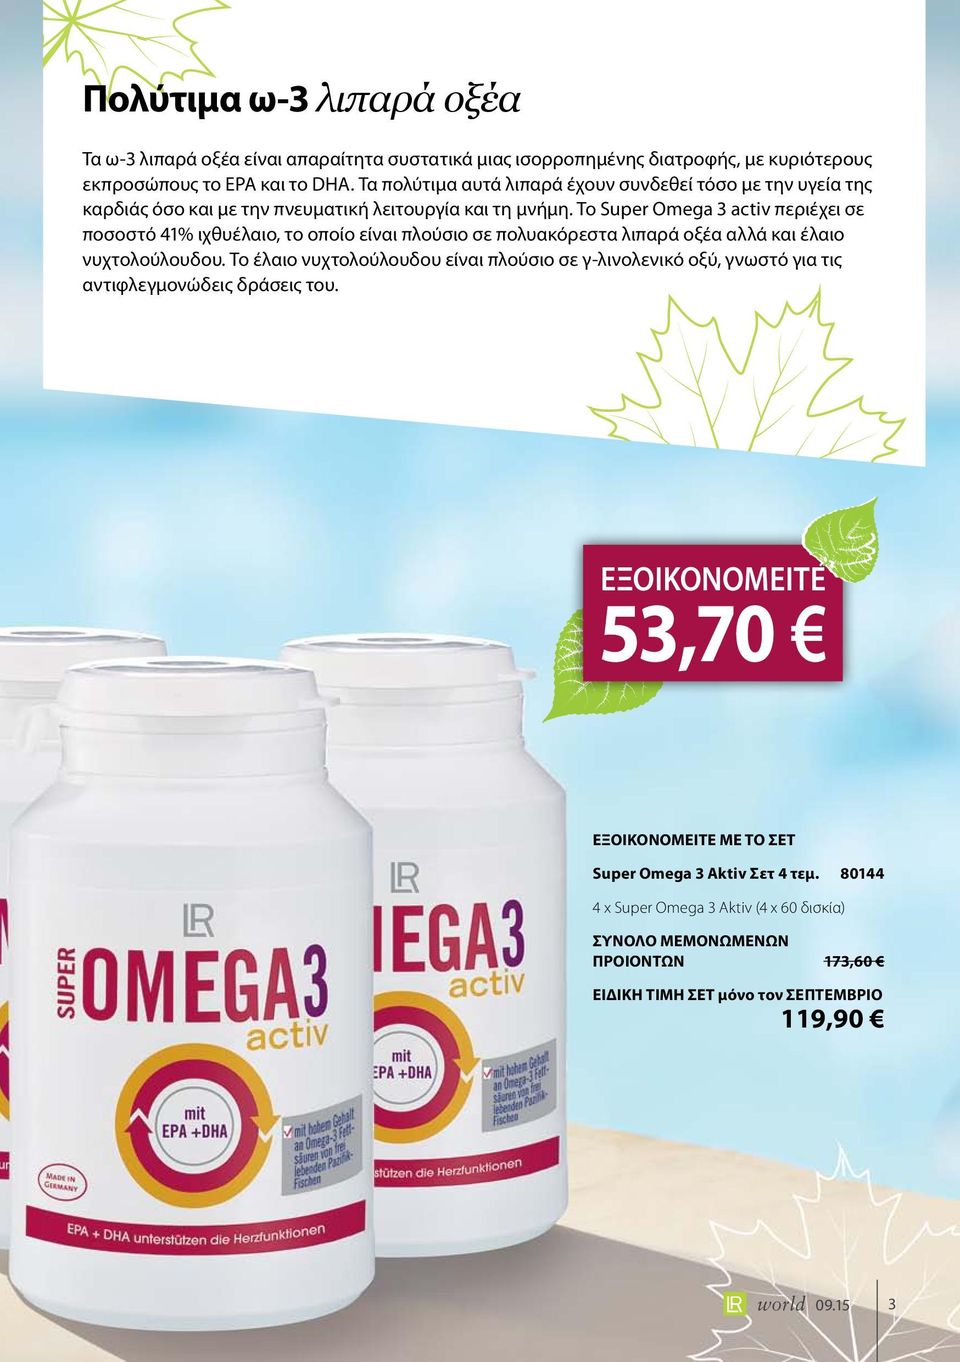 Το Super Omega 3 activ περιέχει σε ποσοστό 41% ιχθυέλαιο, το οποίο είναι πλούσιο σε πολυακόρεστα λιπαρά οξέα αλλά και έλαιο νυχτολούλουδου.